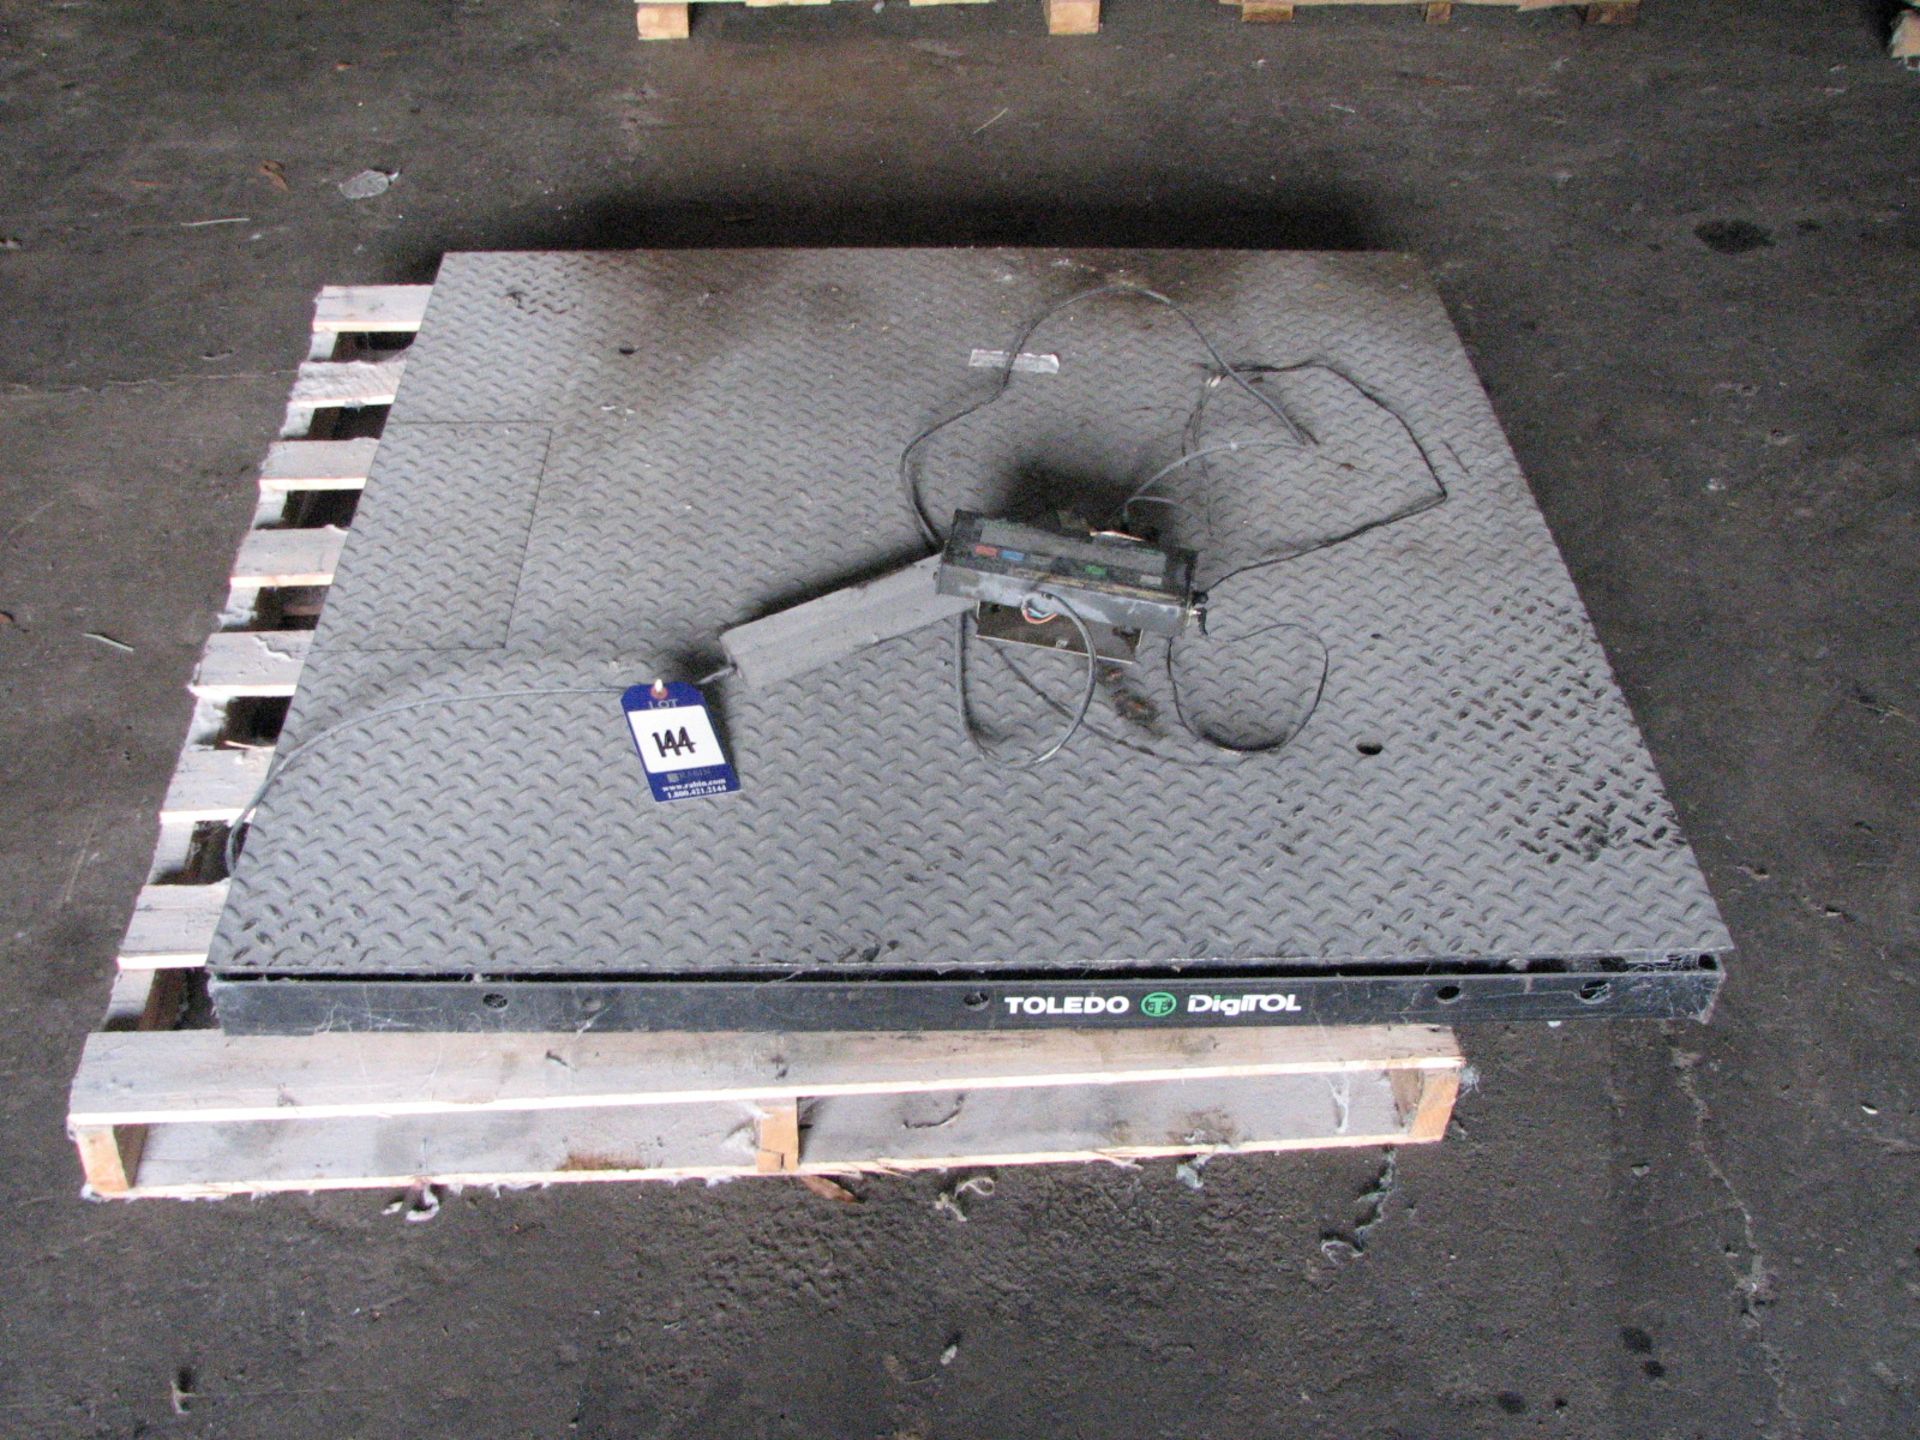 Toledo 48" x 48" floor scale, model 8505, s/n 4270691, digital, 3000 lb. cap.